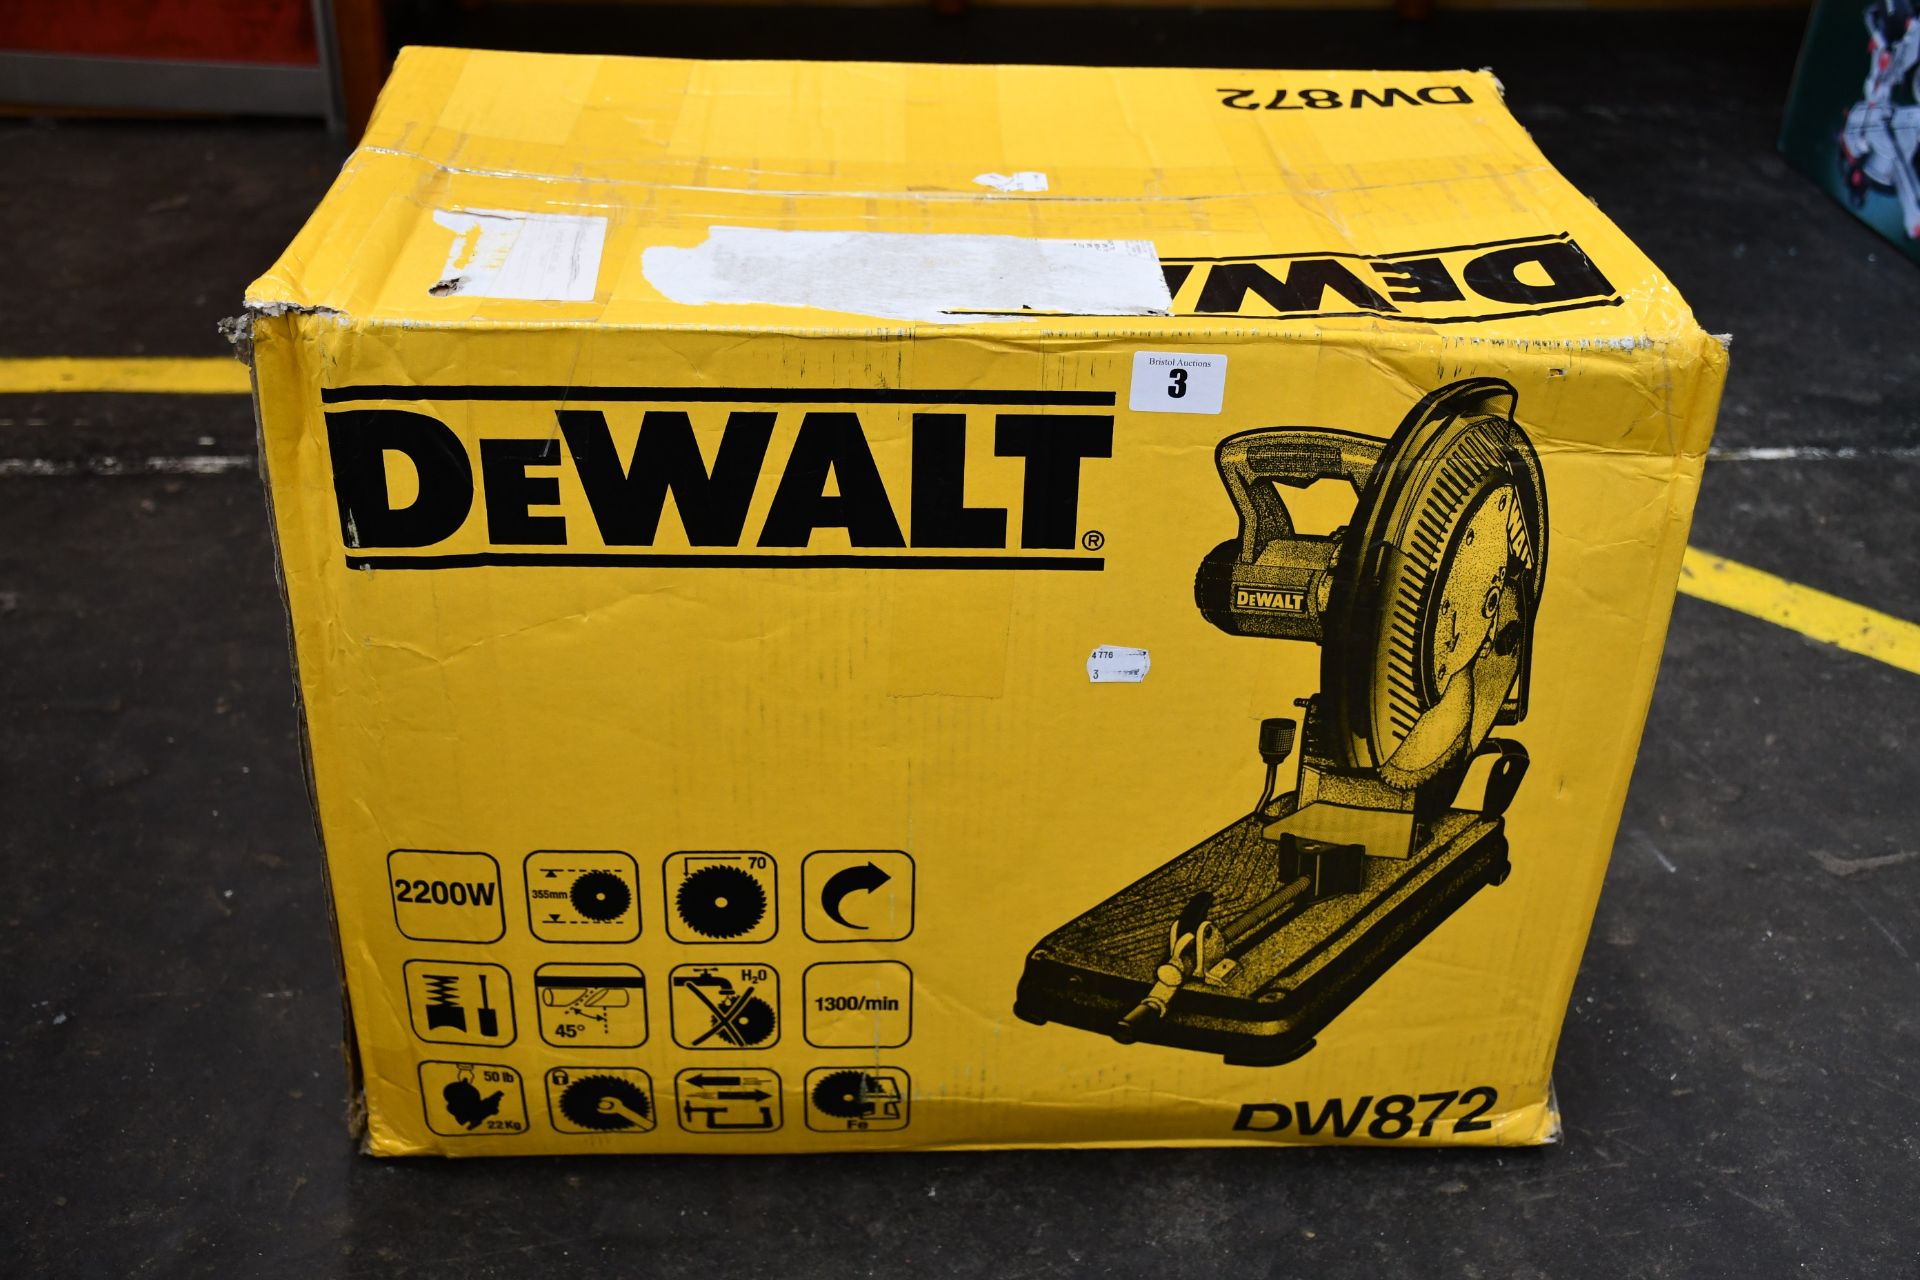 One boxed as new Dewalt DW872 portable cut off saw (240 volt).